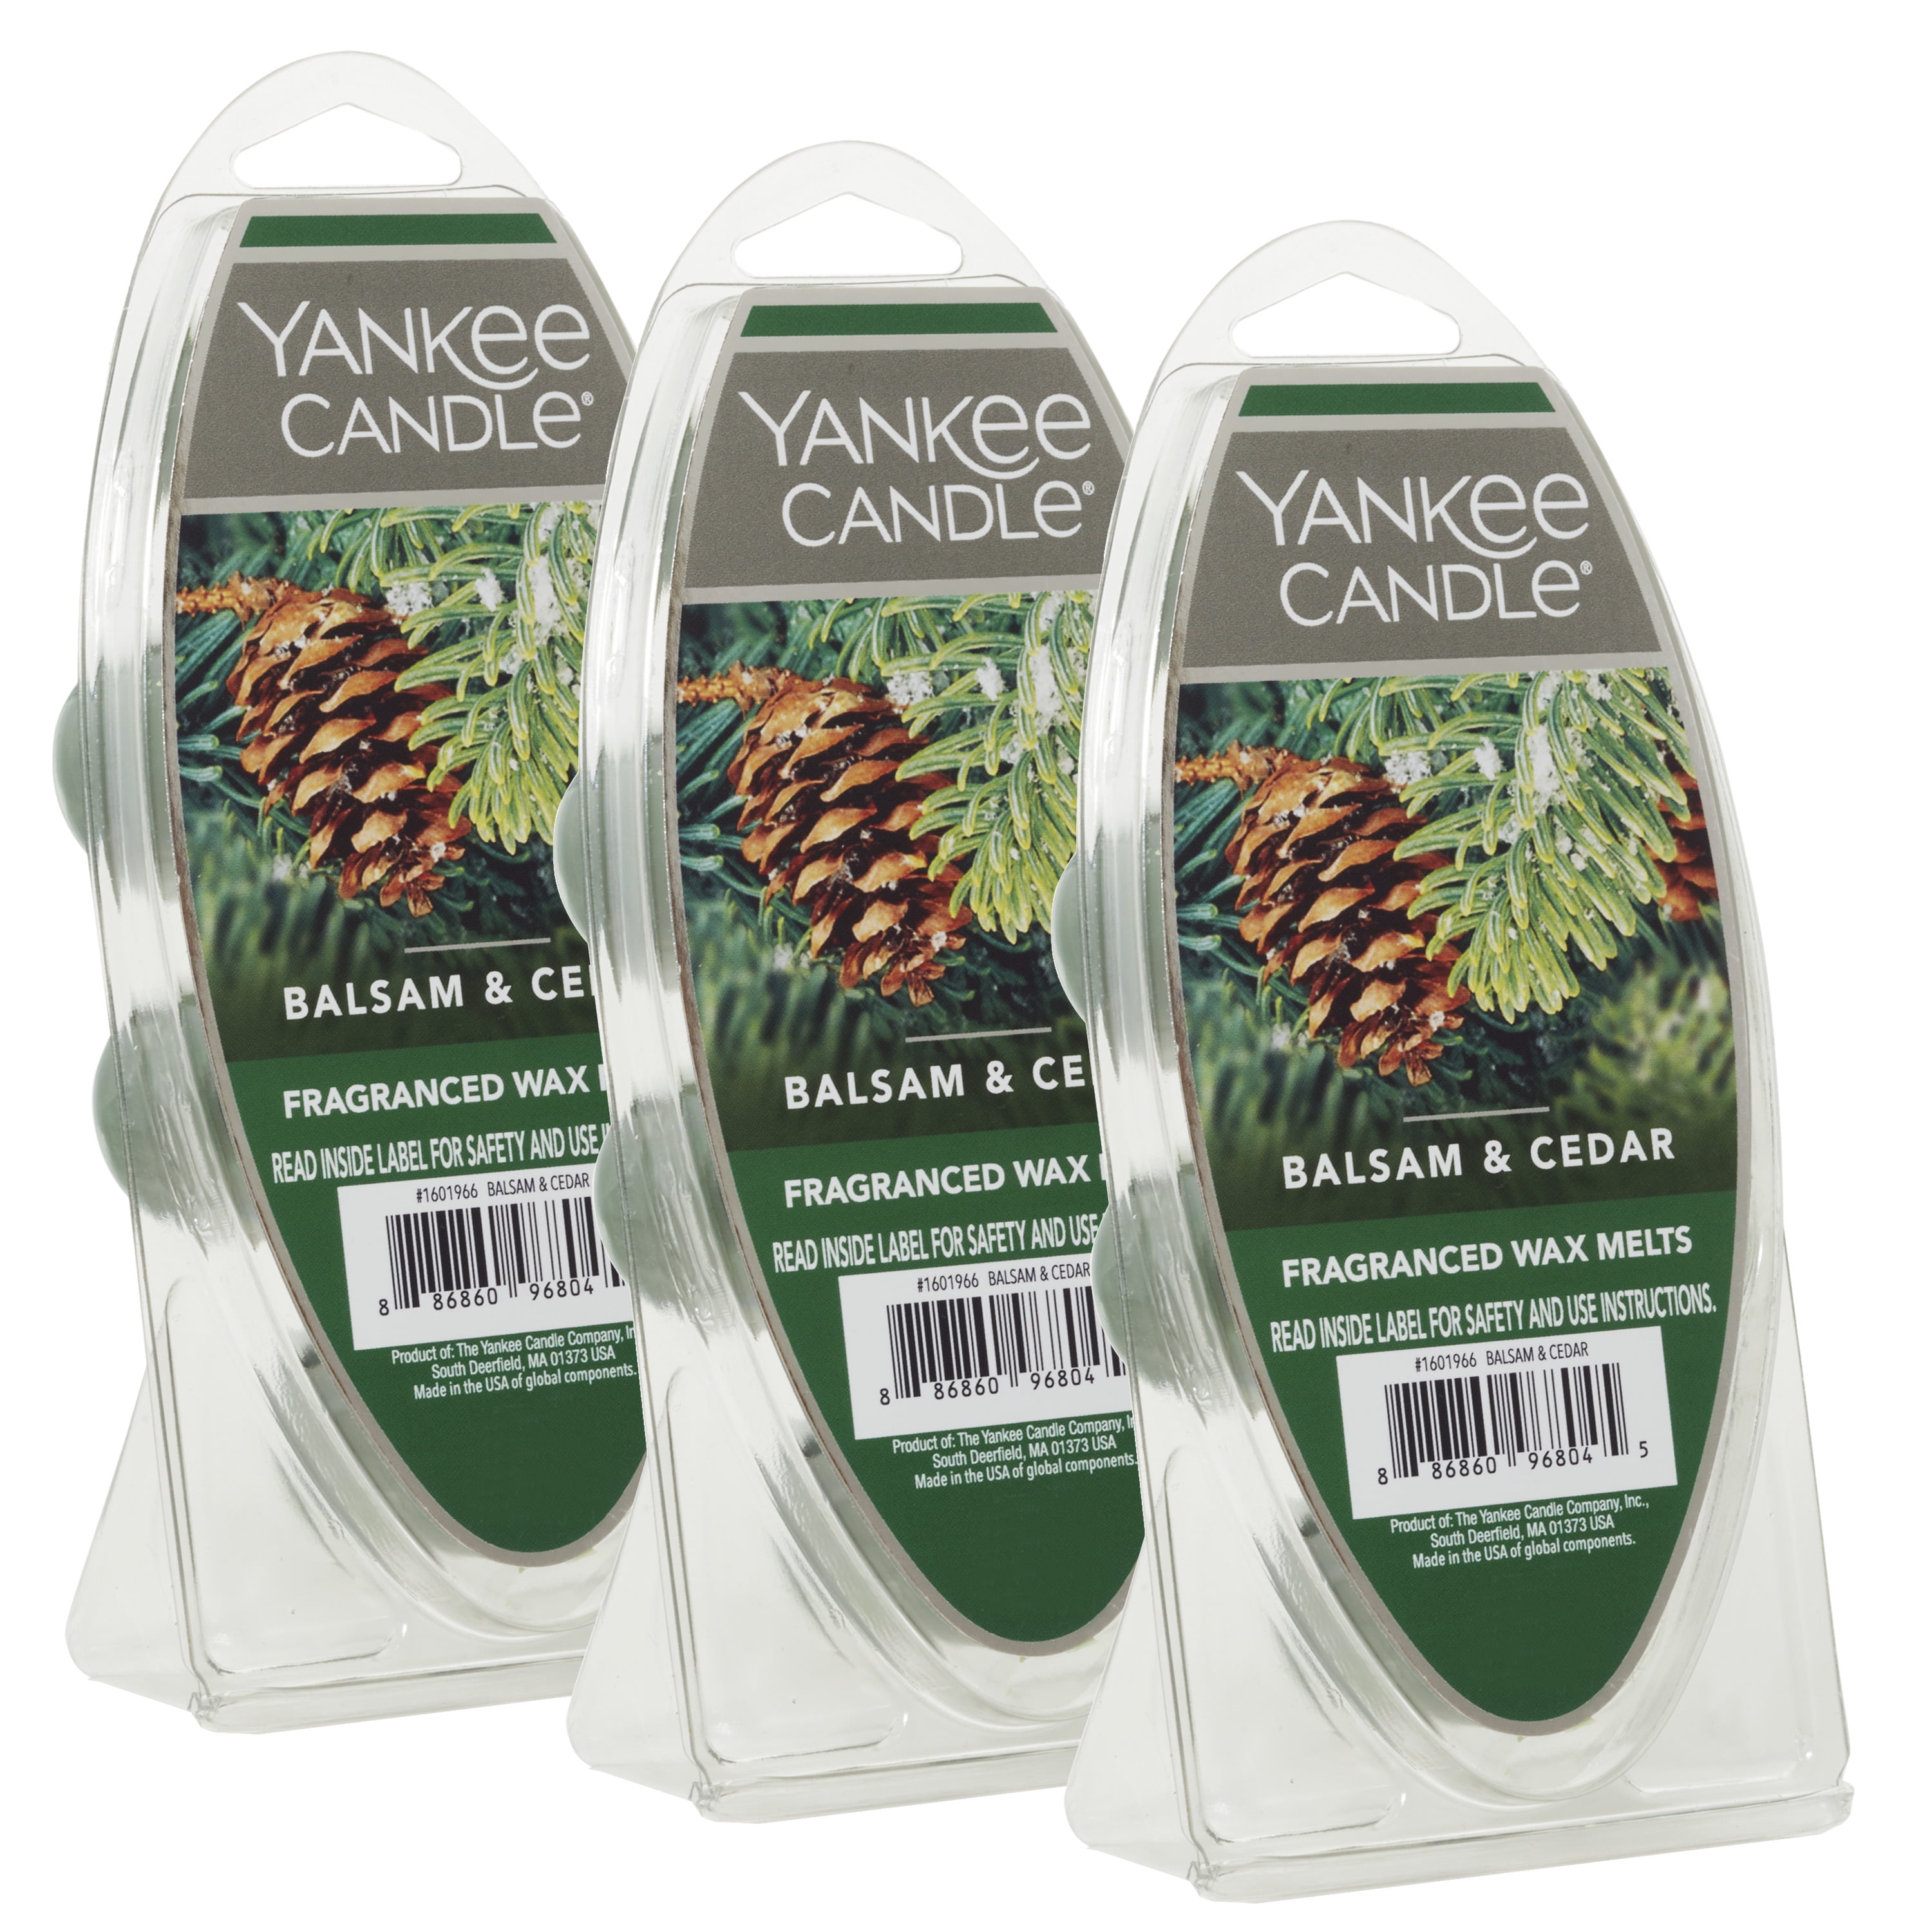 Yankee Candle Balsam & Cedar Wax Melts, 3 Pack 